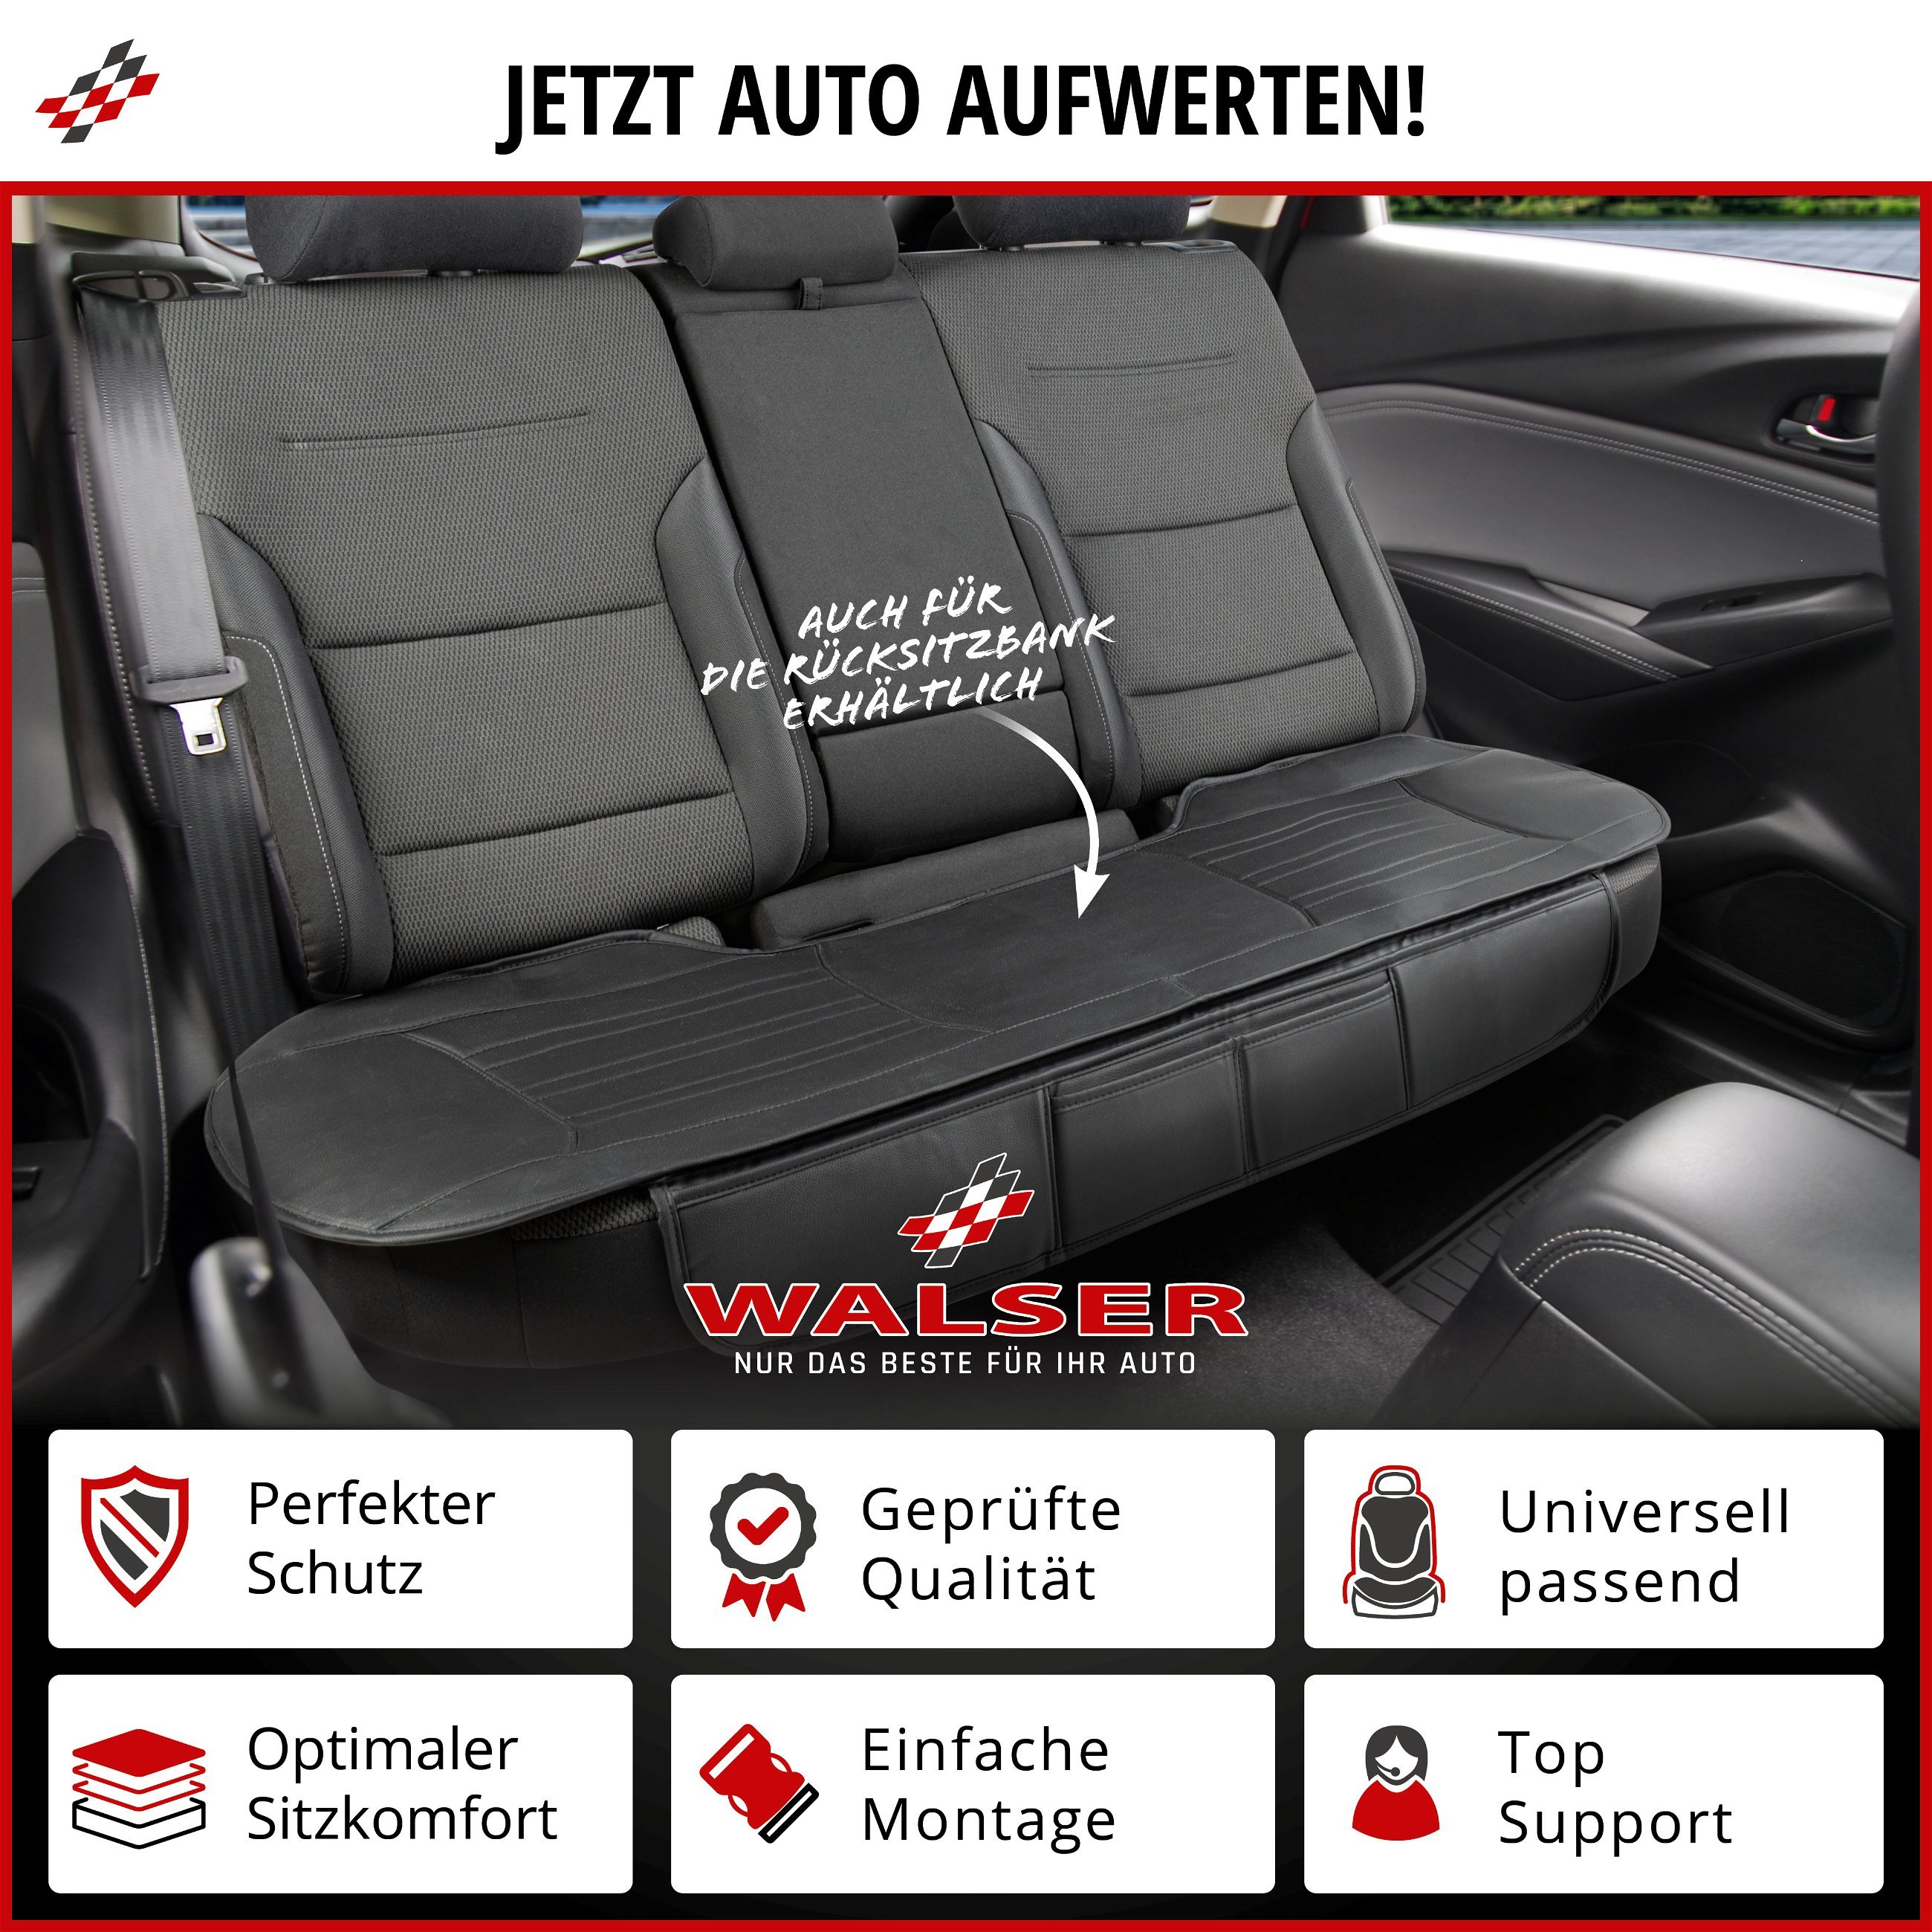 PKW Sitzauflage Fernando, Auto Sitzaufleger Vordersitz, Auto Sitzschoner Sitzfläche 1 Stück schwarz